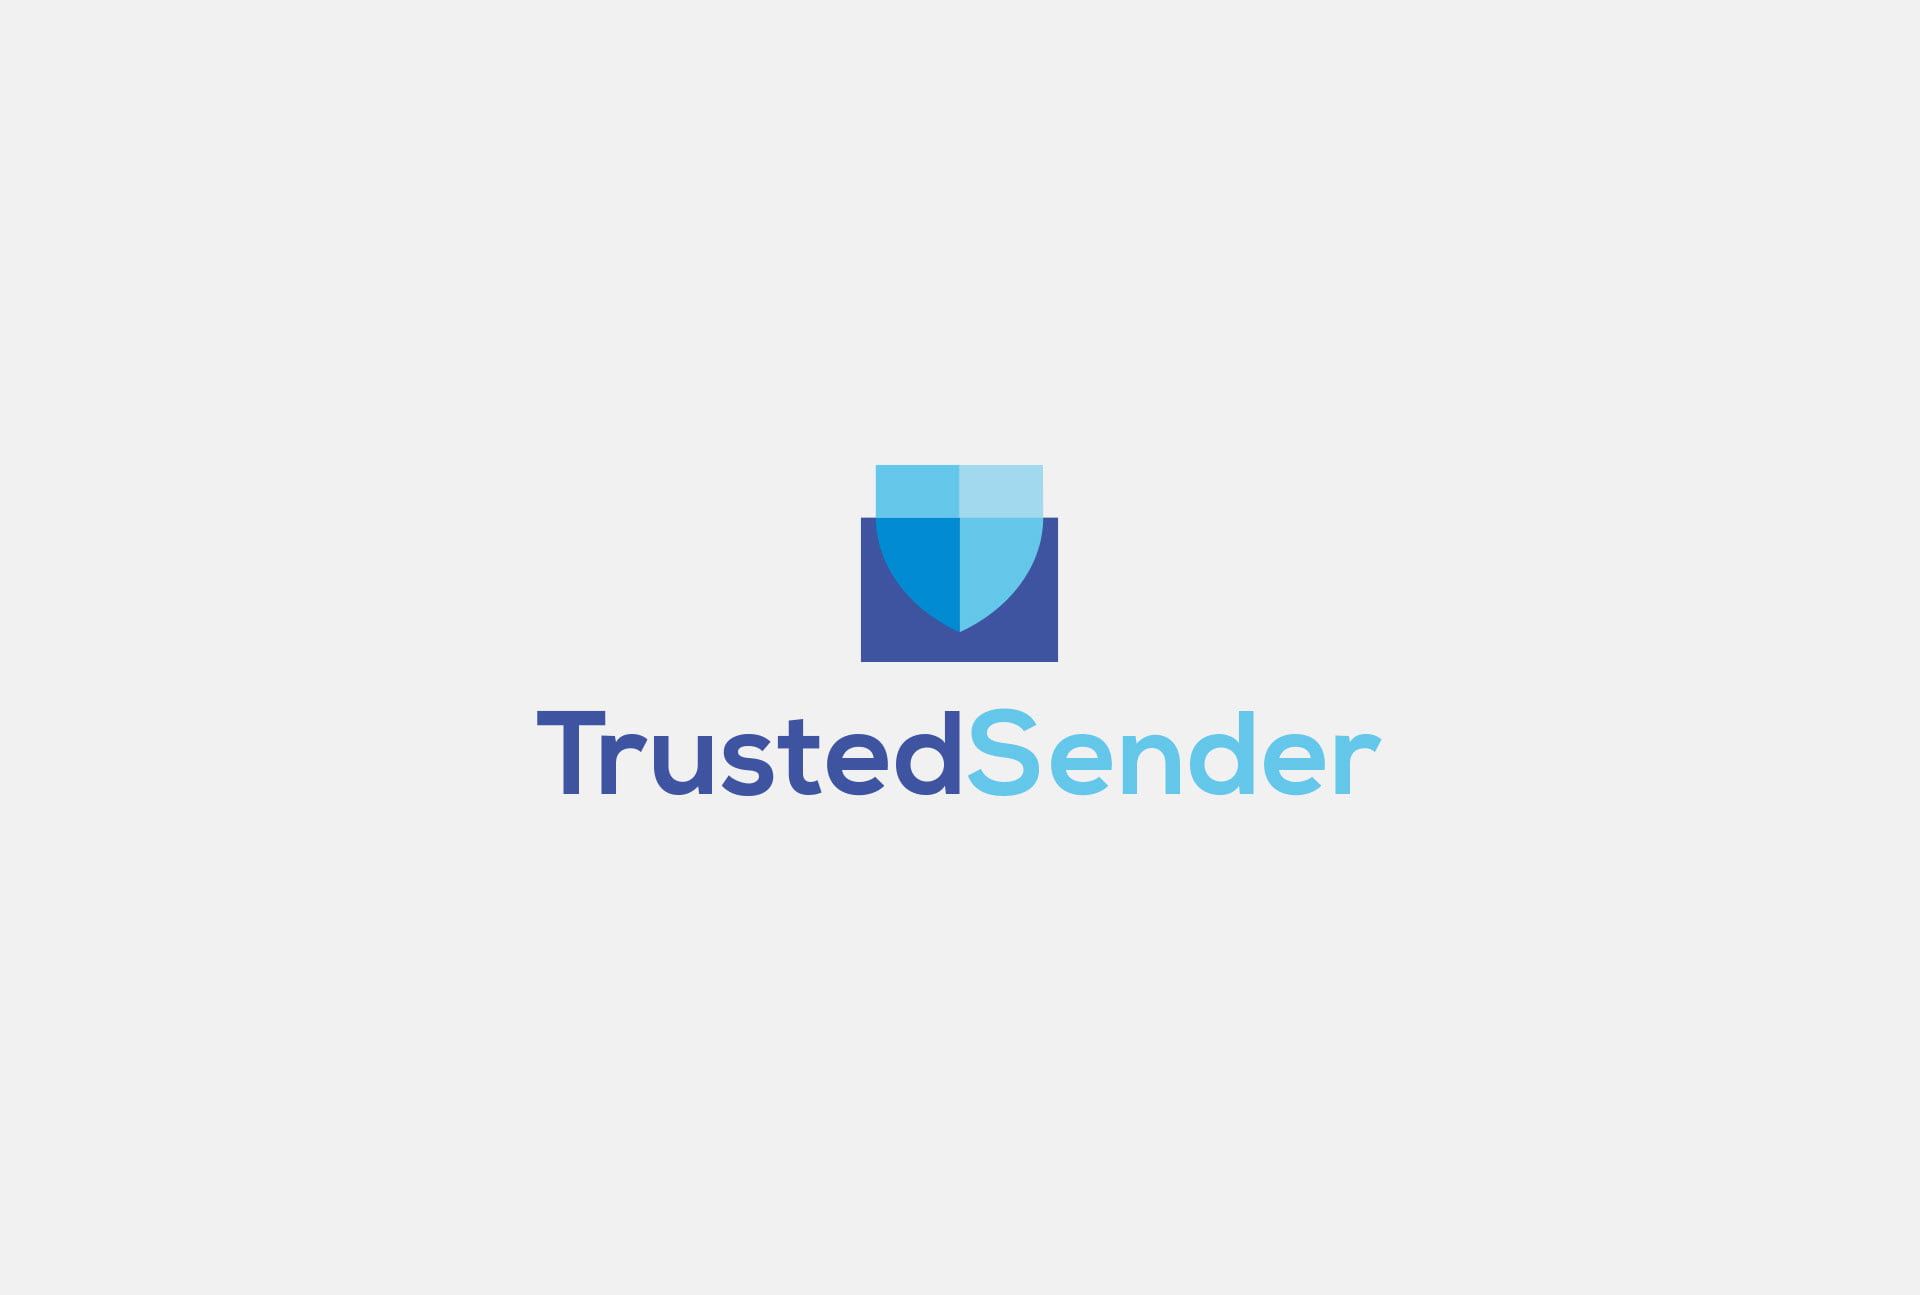 TrustedSender - Projekt logo i identyfikacji wizualnej